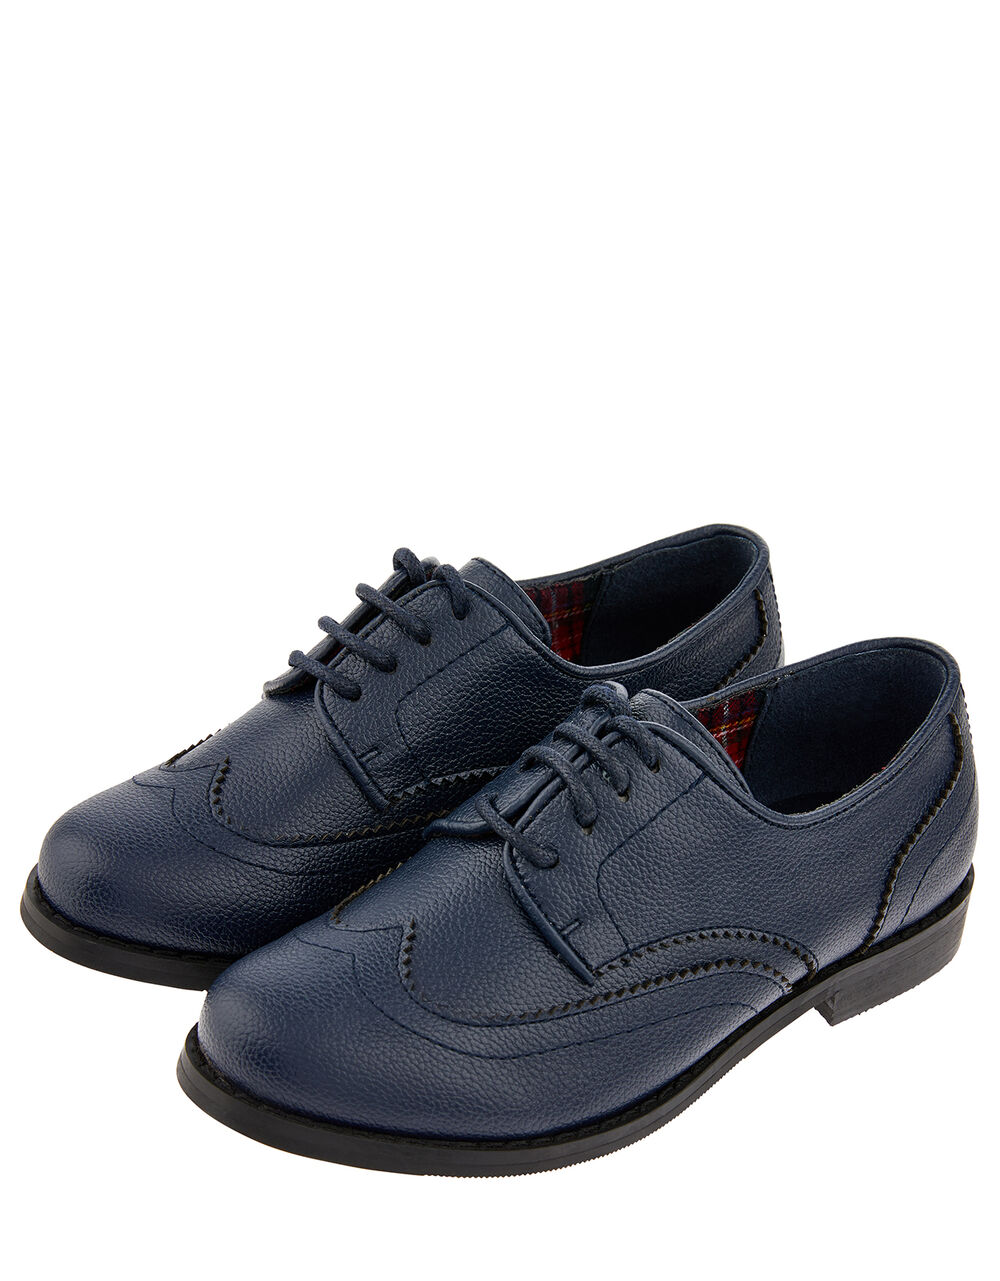 Children Children's Shoes & Sandals | Boys' Oxford Brogue Shoes Blue - UB46378